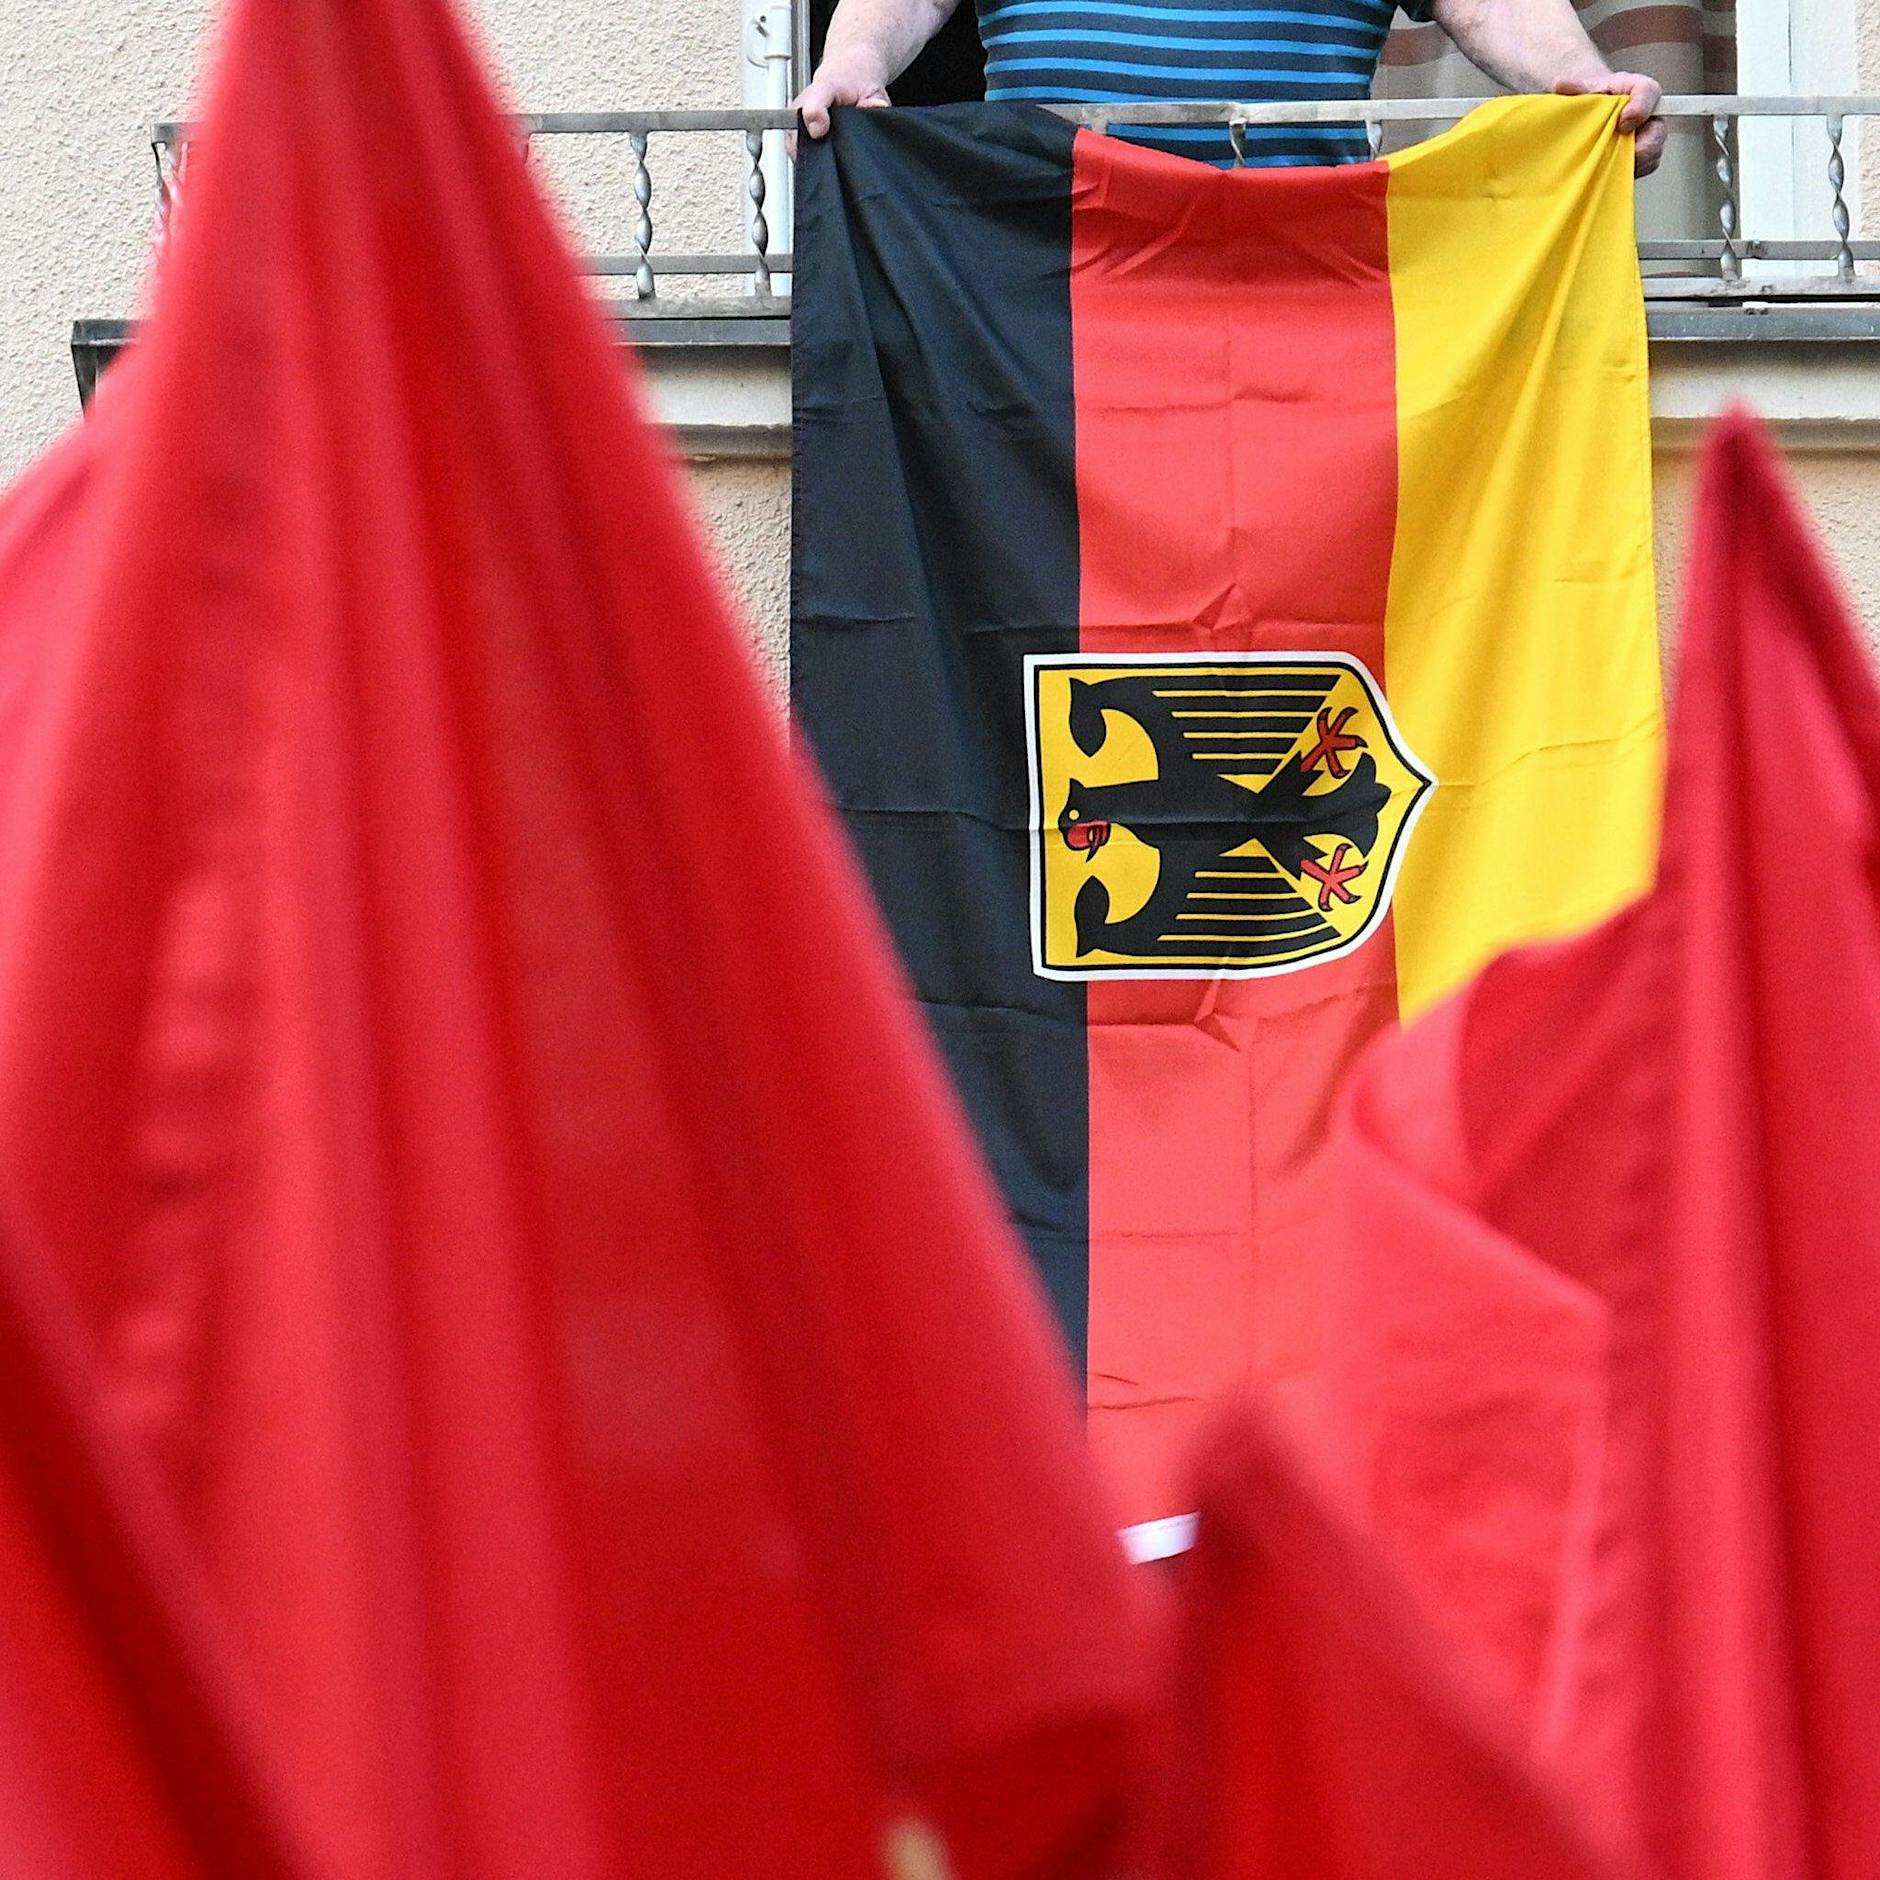 Er zeigte bei der 1.-Mai-Demo in Berlin eine Deutschlandflagge: Jetzt bekommt er Morddrohungen